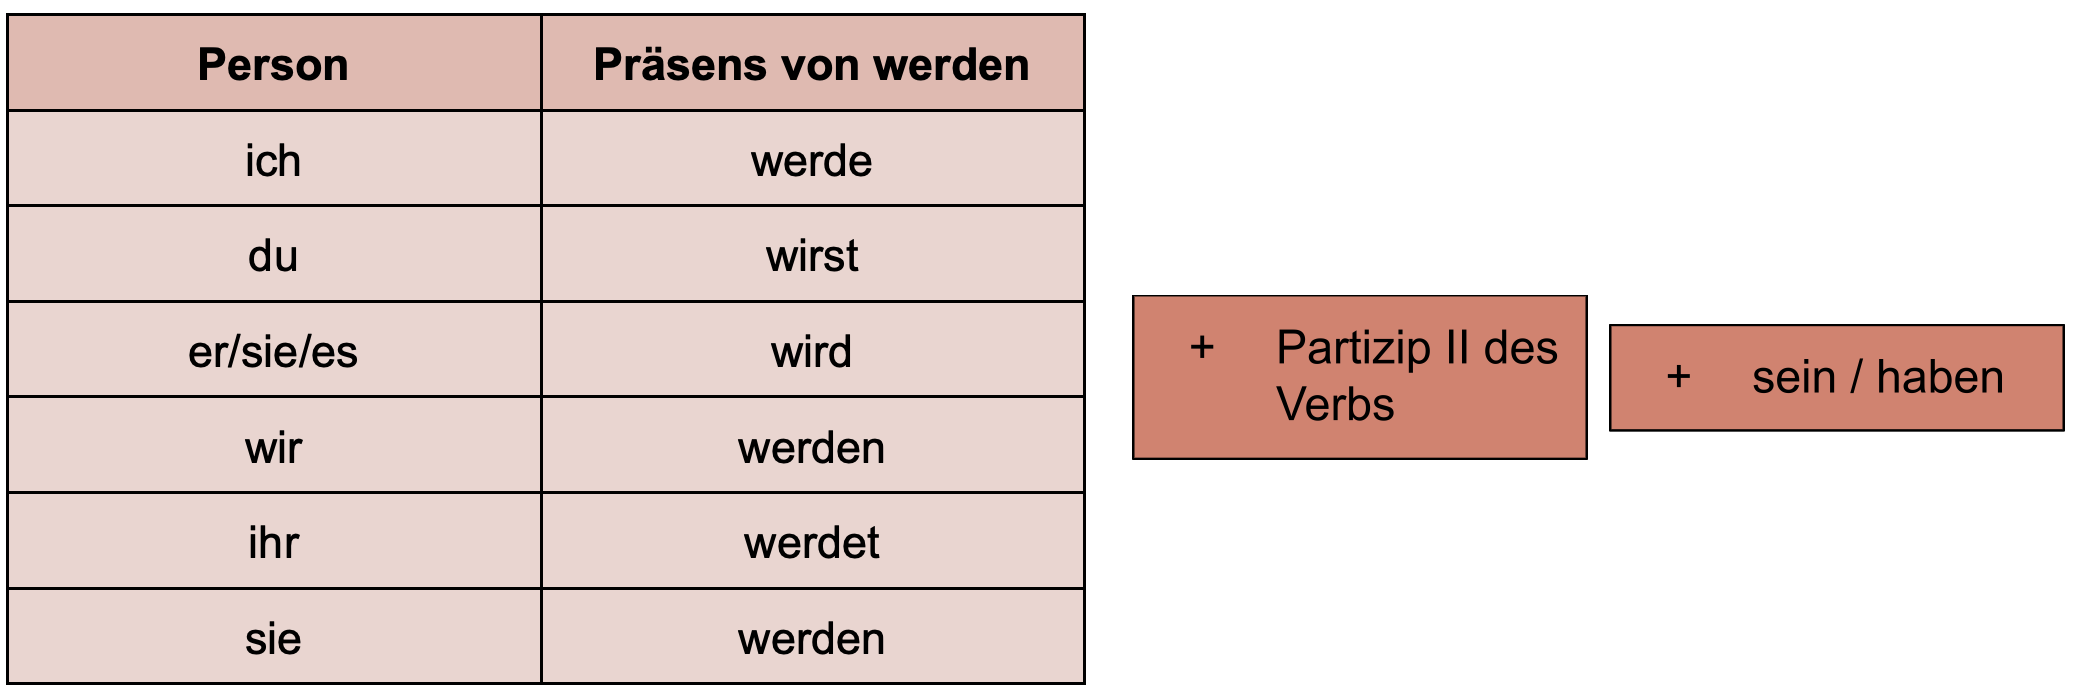 Tabelle zur Bildung des Futur II mit dem Präsens von werden, so wie dem Partizip II des Vollverbs + sein/haben